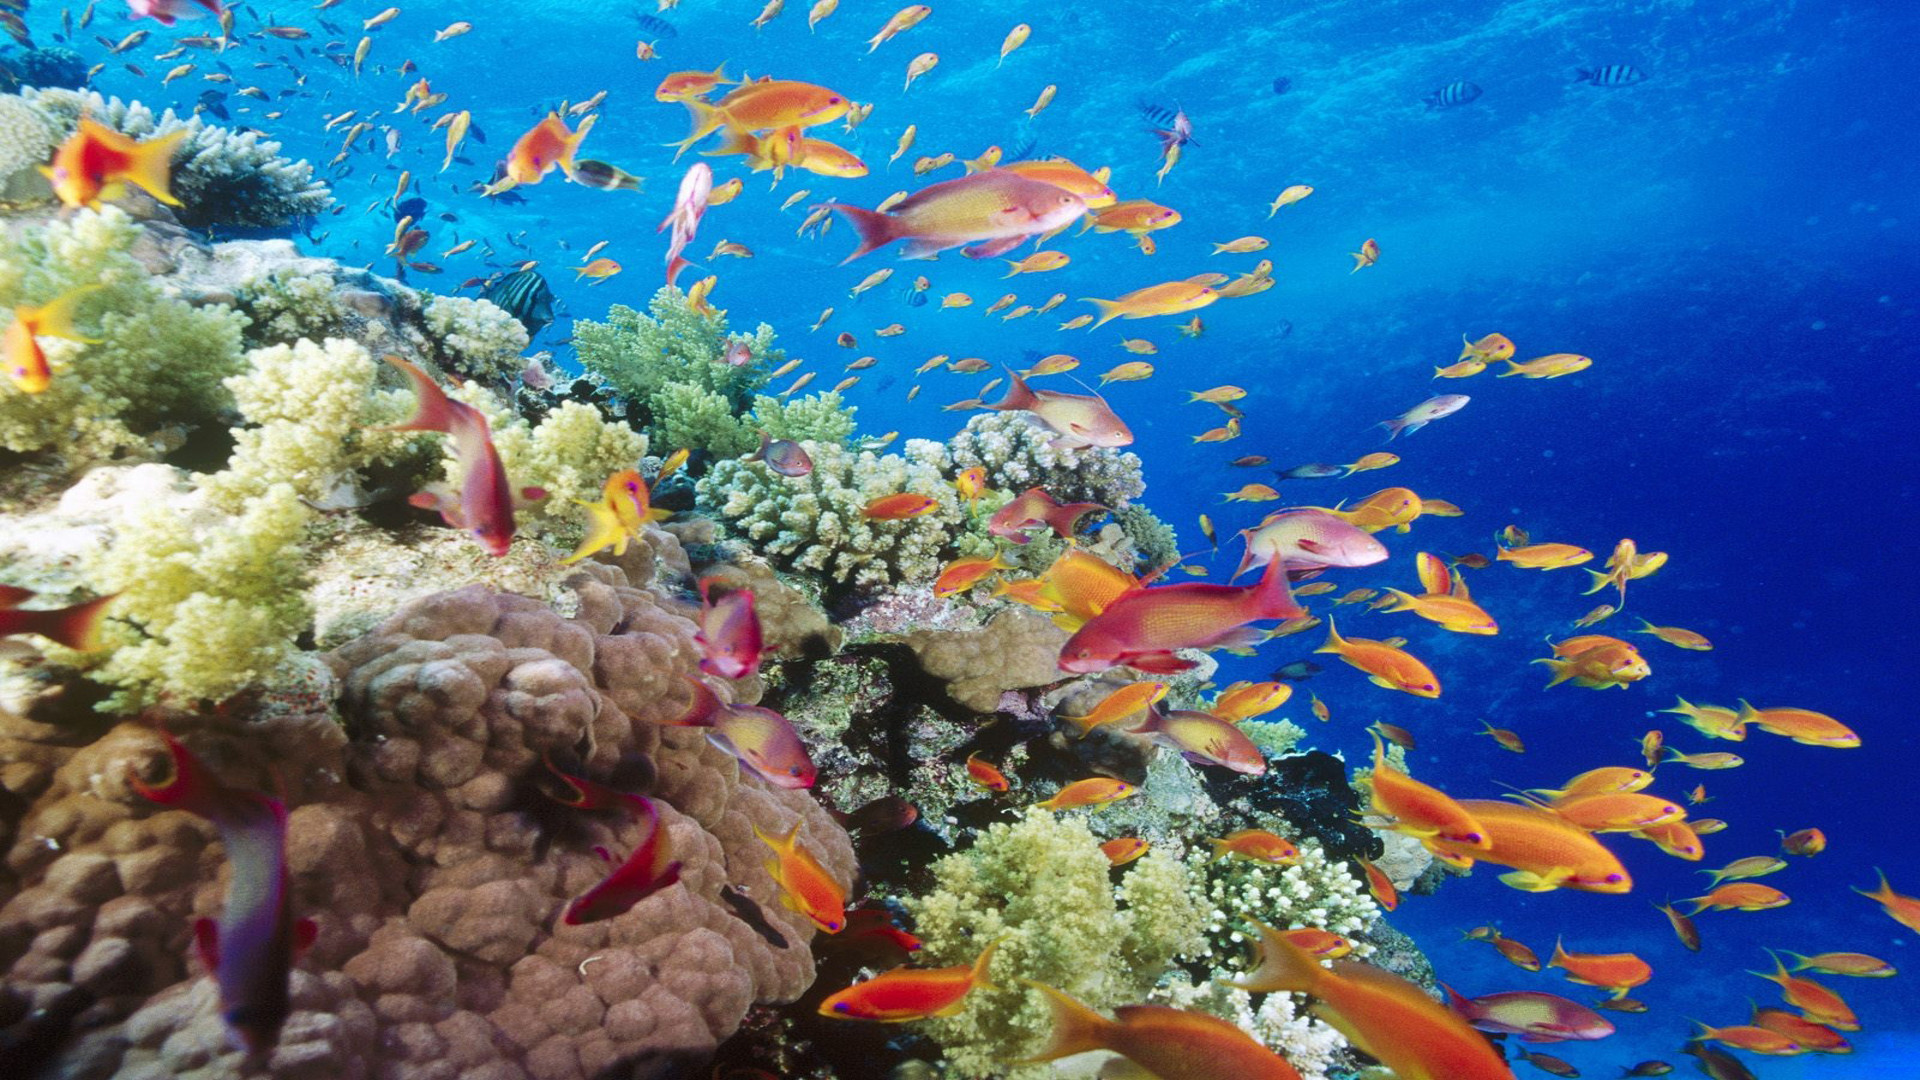 fond d'écran hd sous l'eau,récif,récif de corail,sous marin,poissons de récifs coralliens,biologie marine